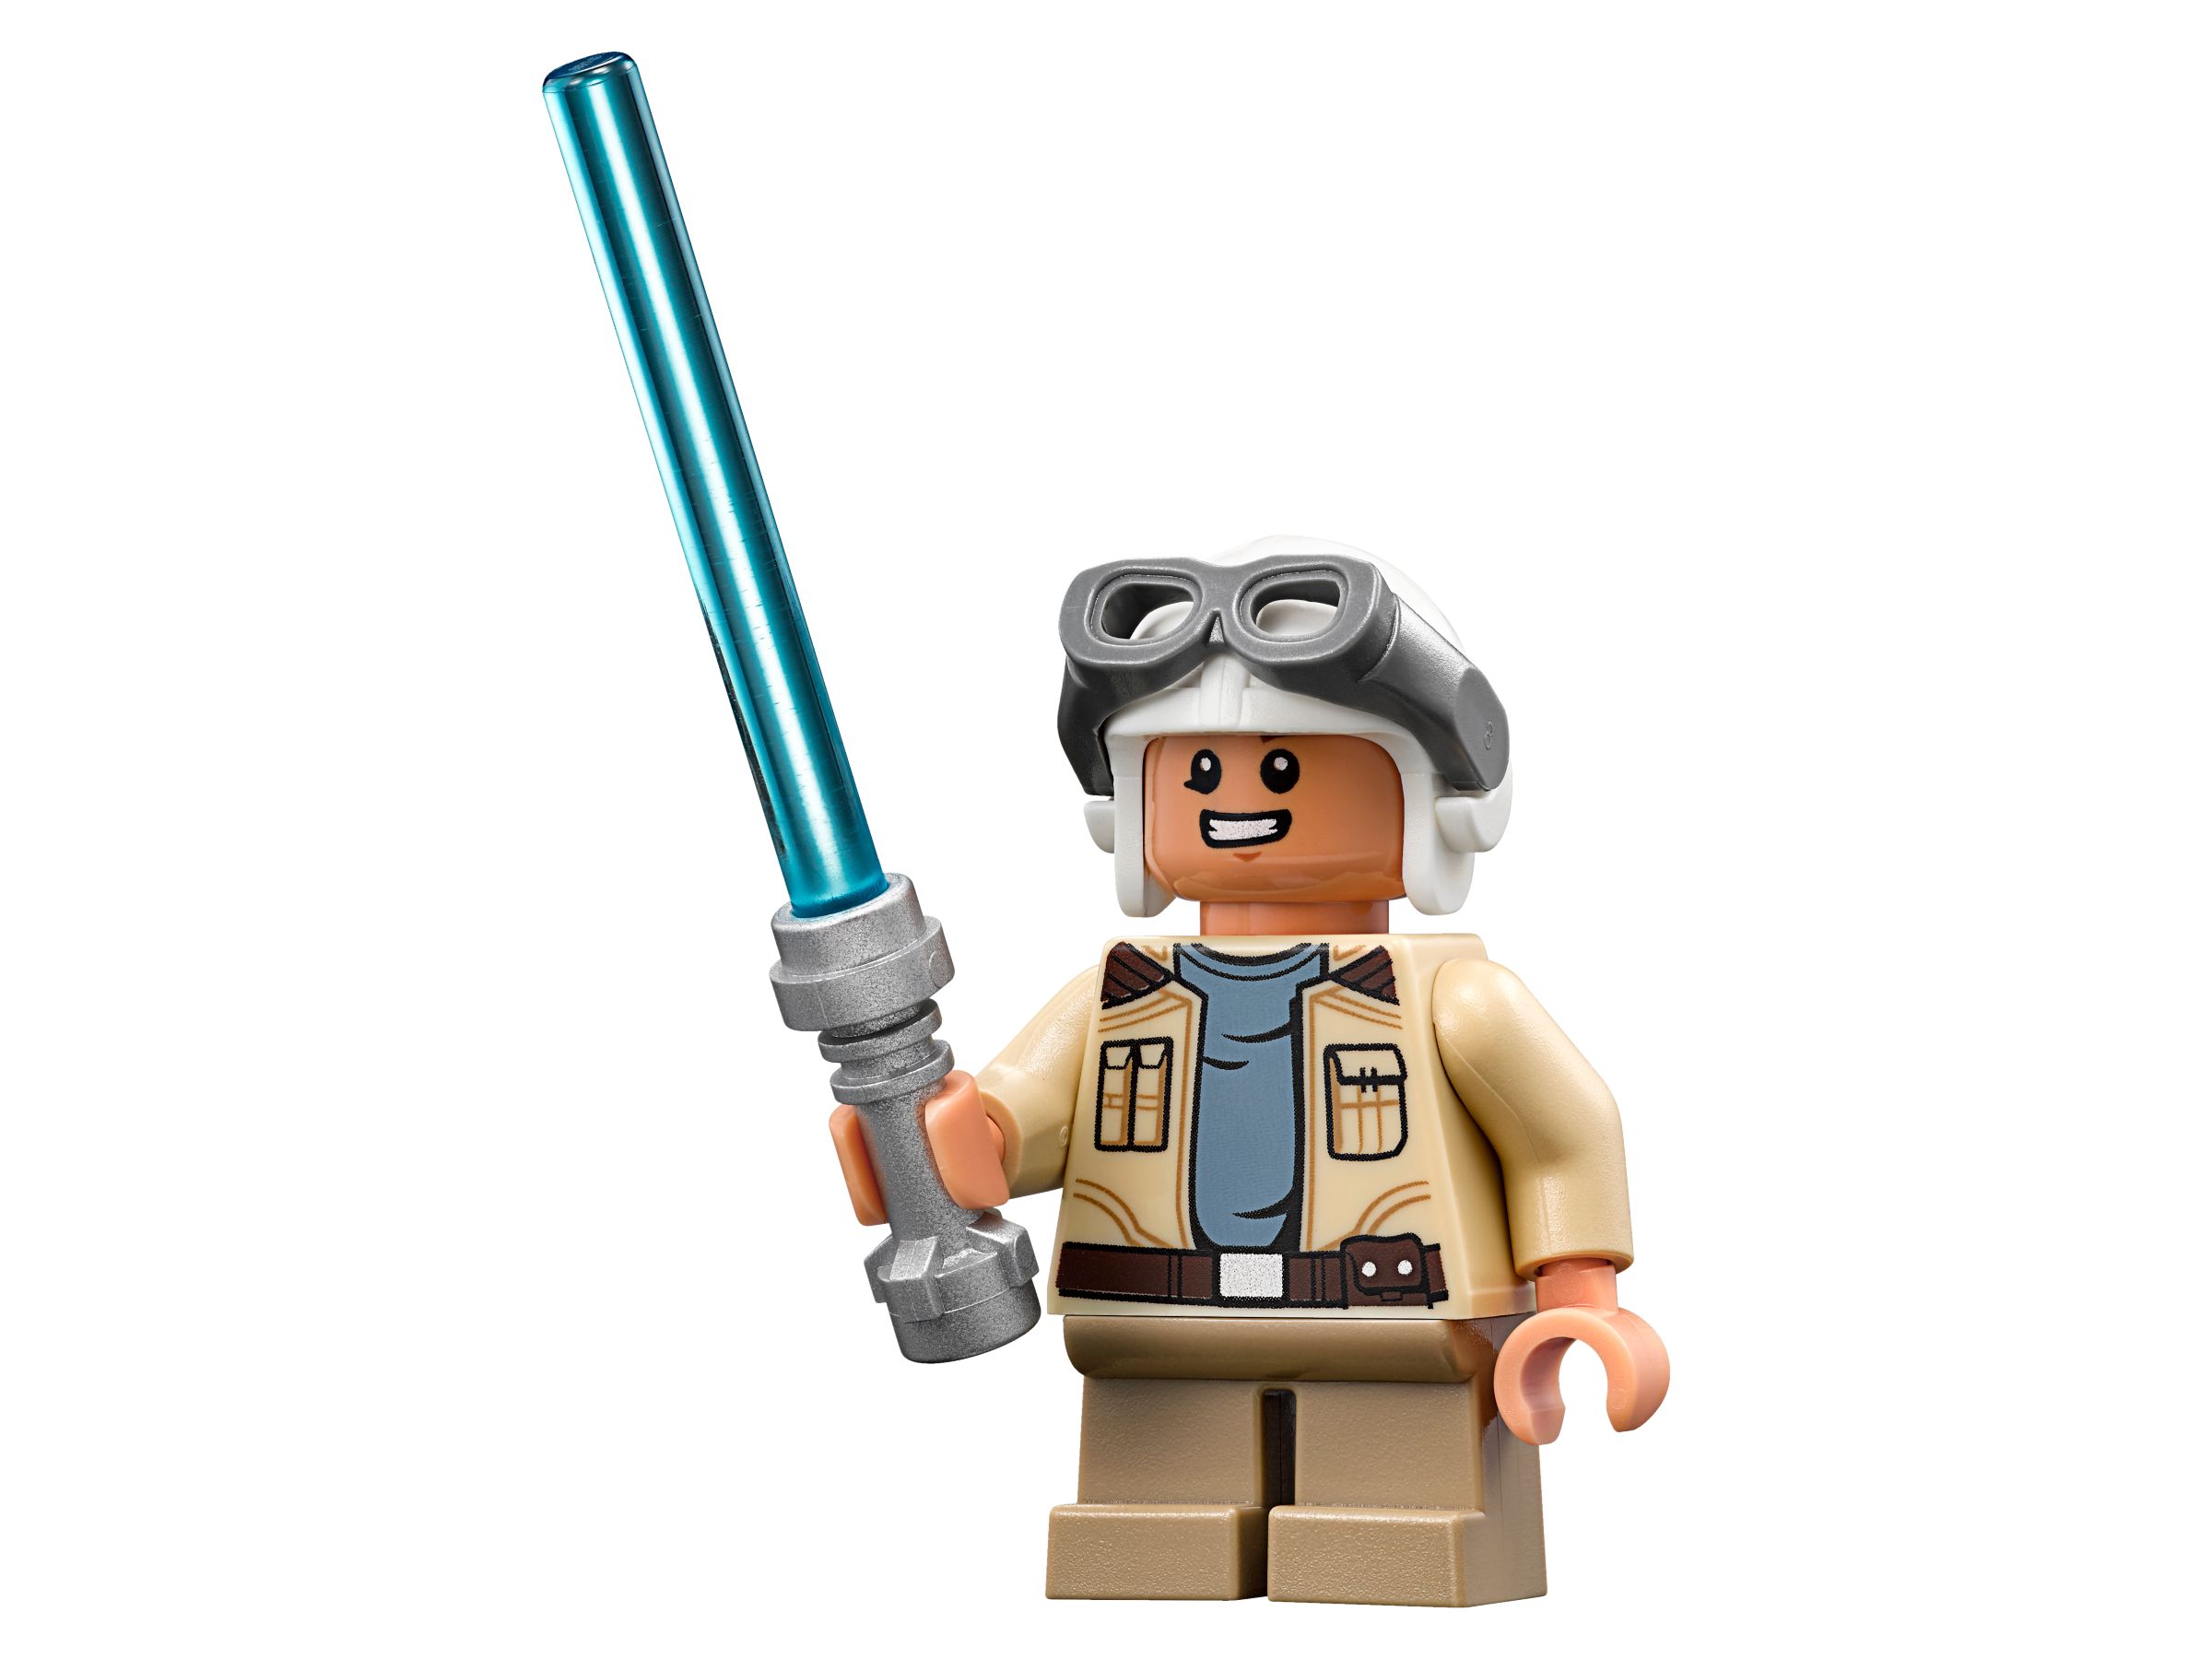 LEGO Star Wars 75185 Tracker I LEGO_75185_alt9.jpg